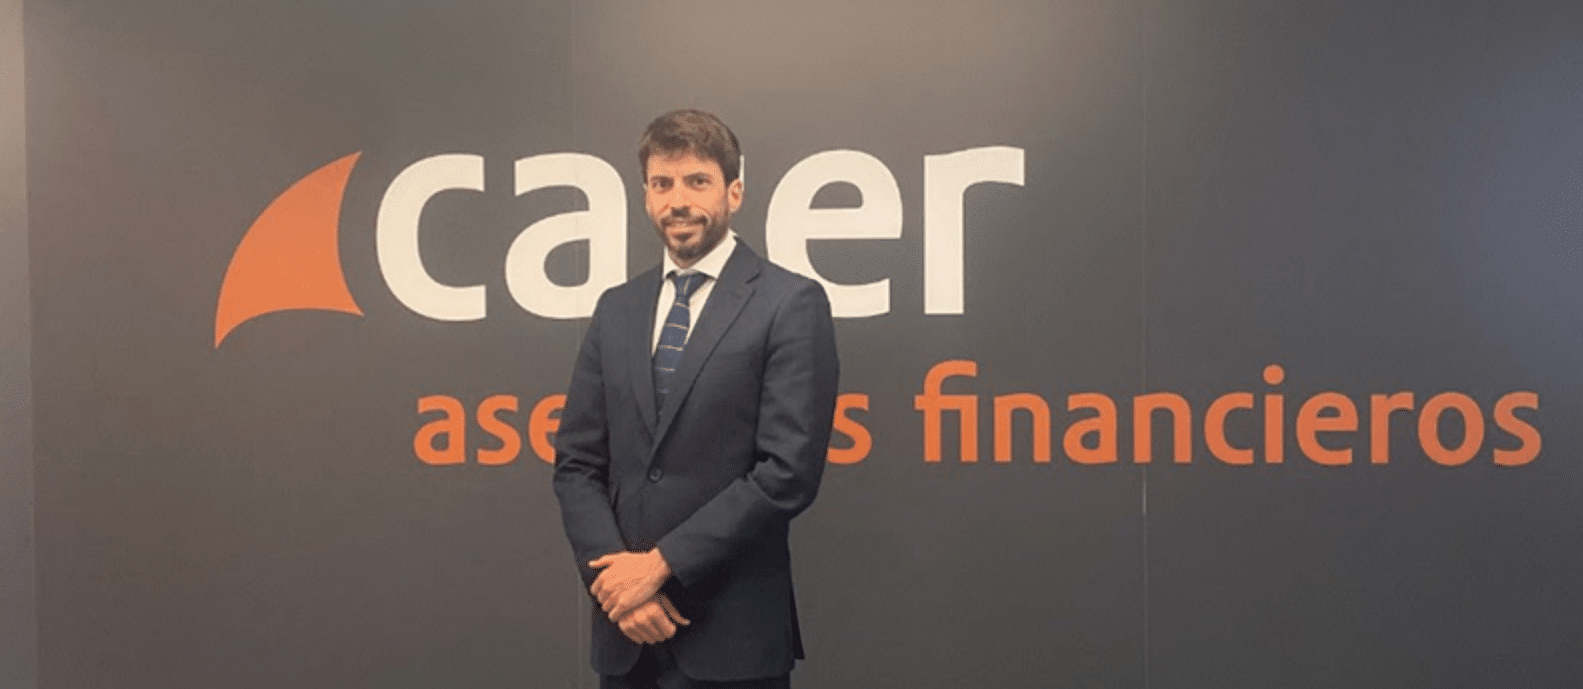 Caser Asesores Financieros incorpora a Daniel Valenzuela a su red de agentes